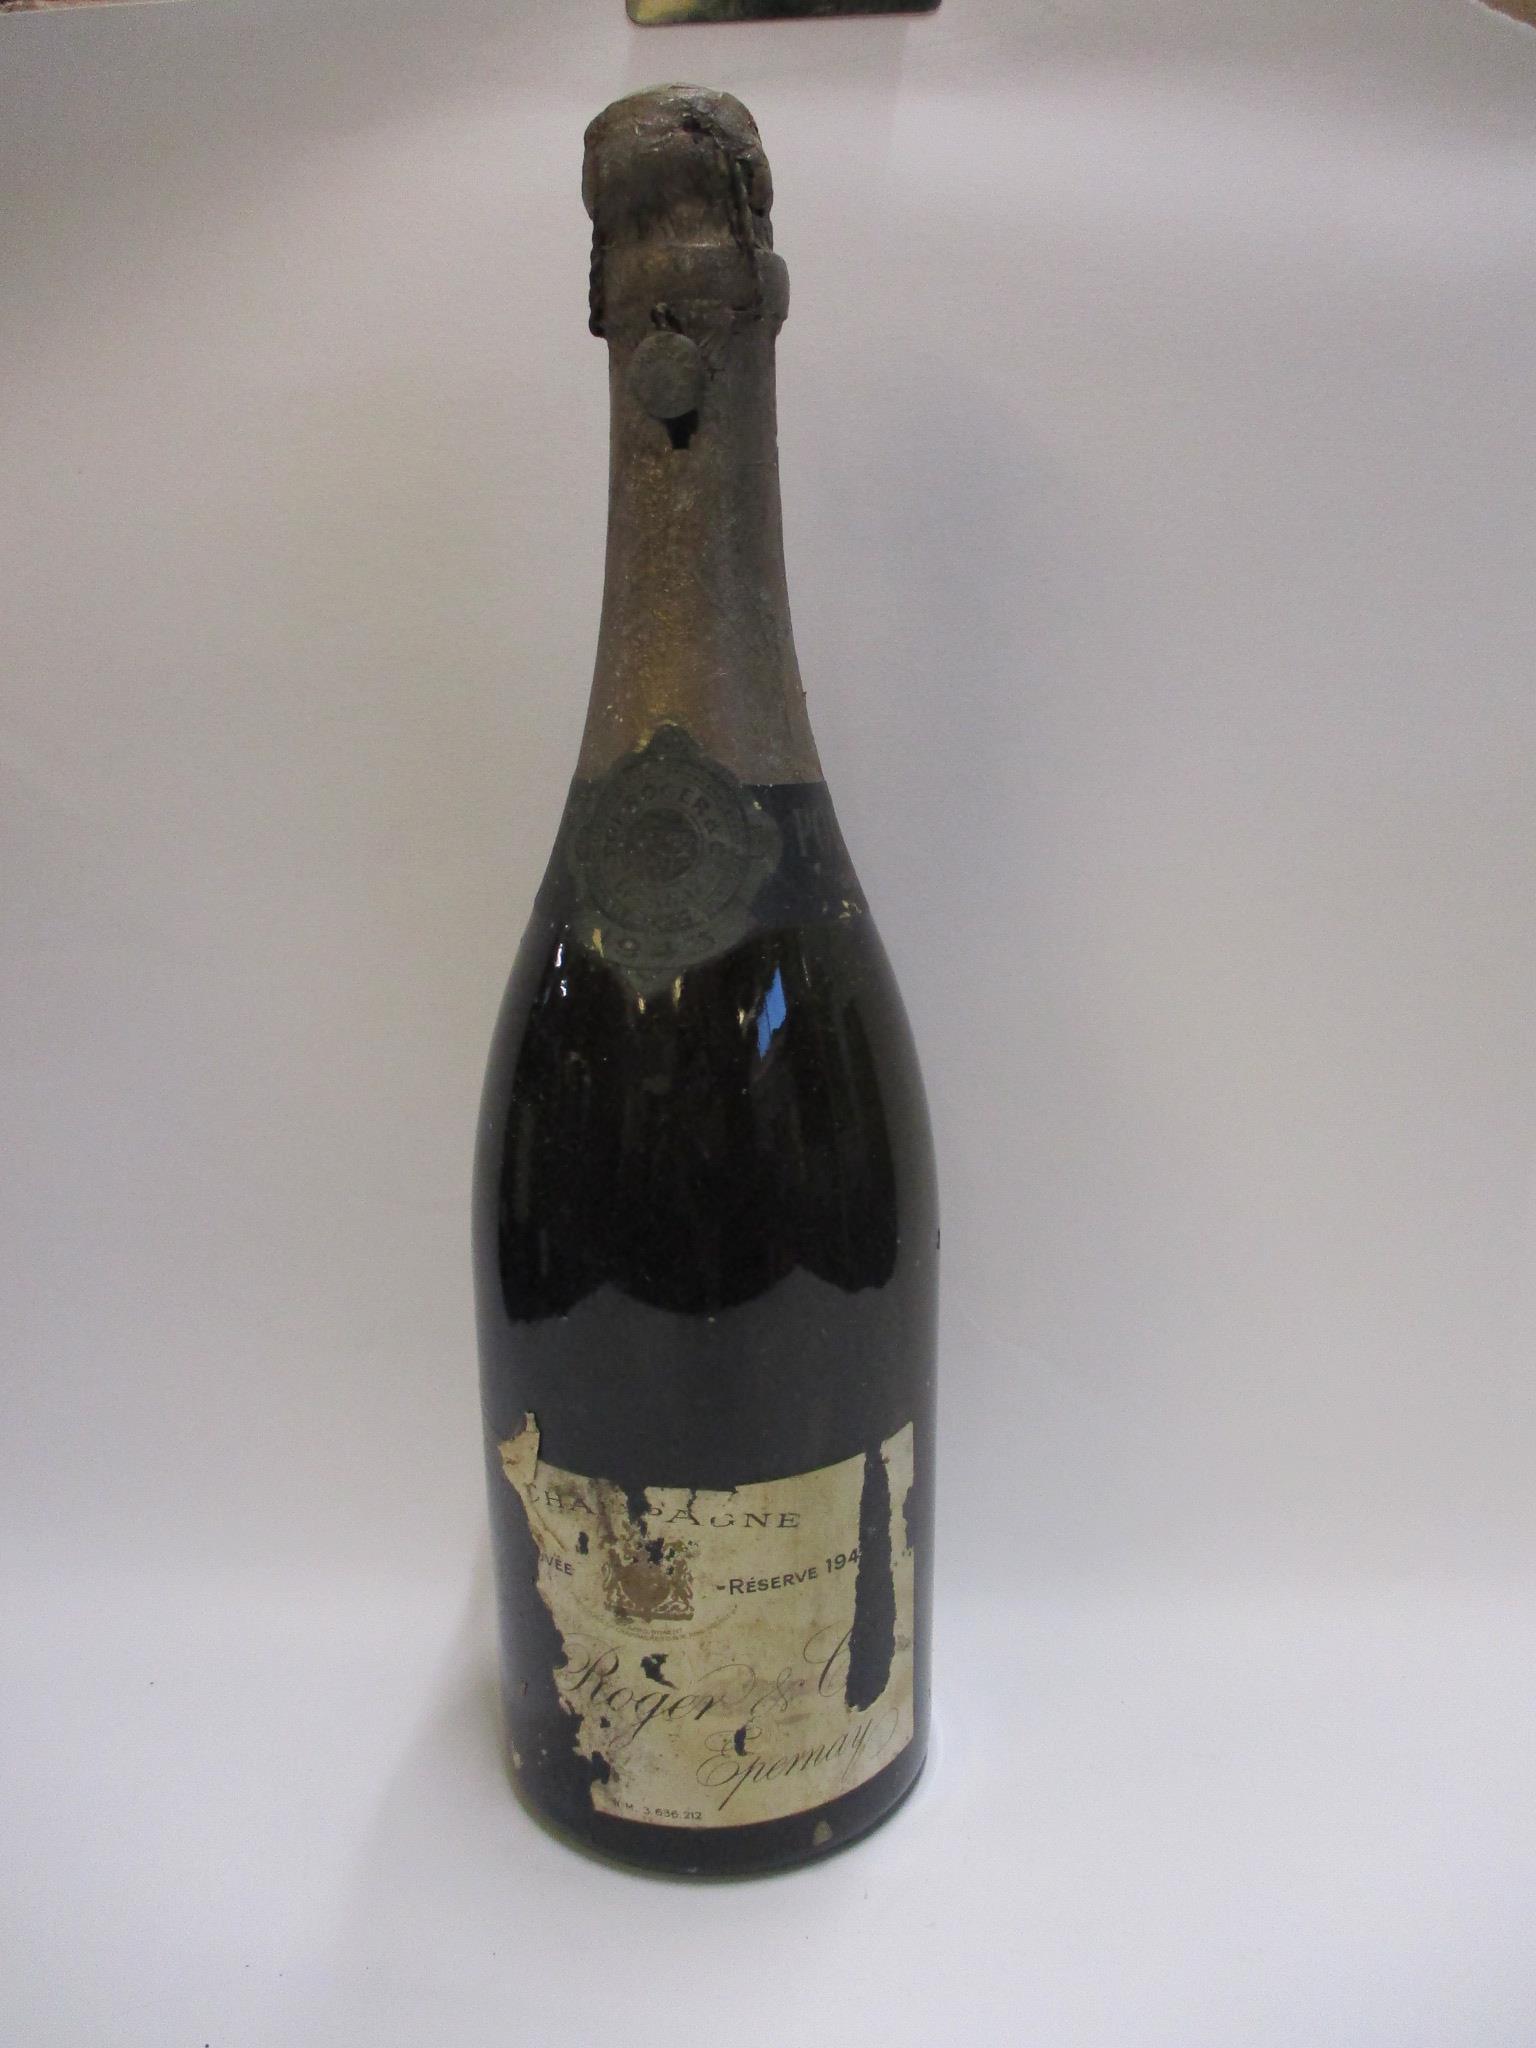 1943 Pol Roger Champagne, 1 bottle